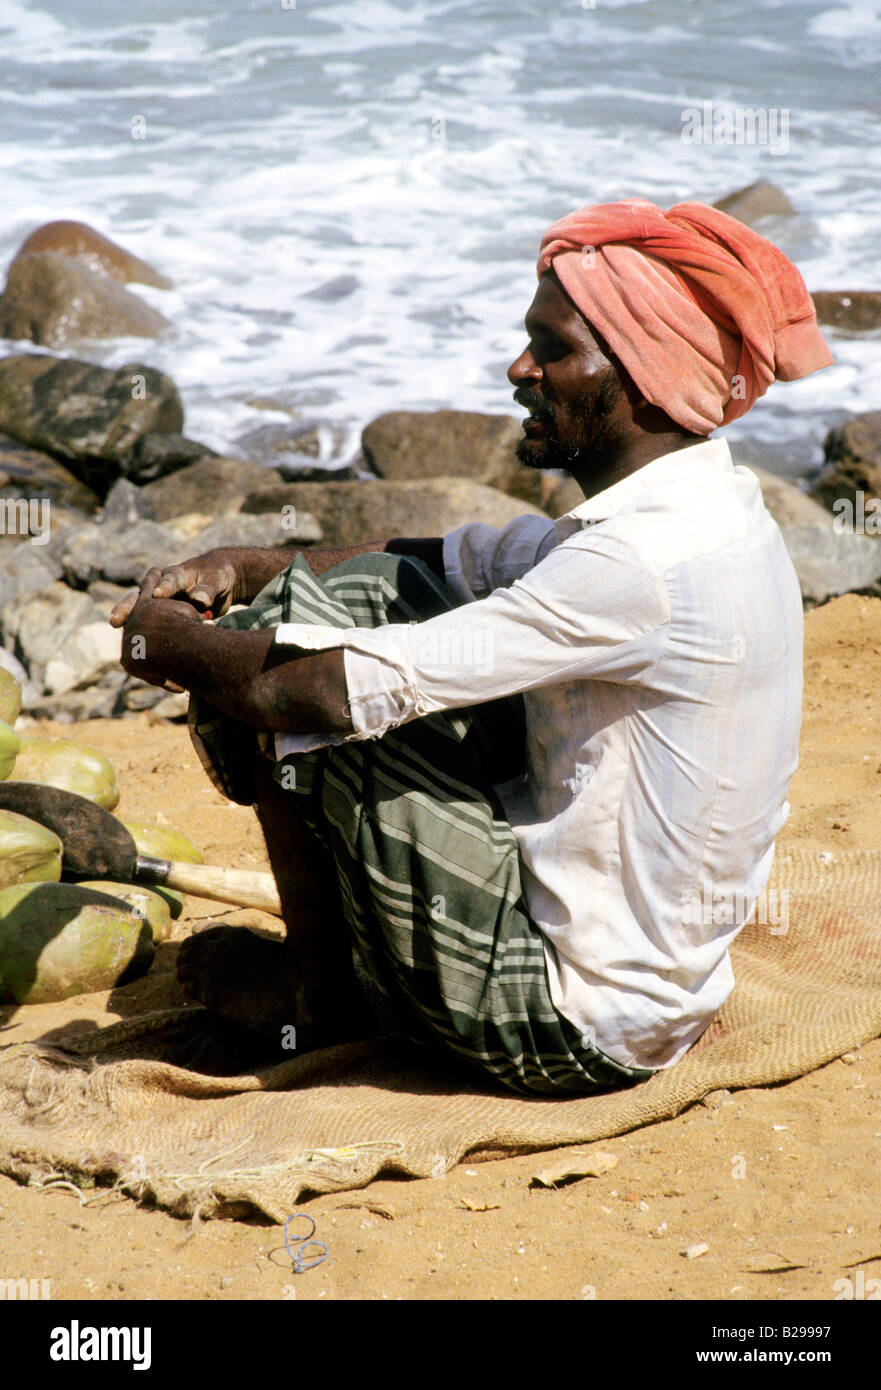 Süd Indien Tamil Nadu Chennai Beach Datum 04 04 2008 Ref ZB573 111917 0063 obligatorische CREDIT Welt Bilder Photoshot Stockfoto